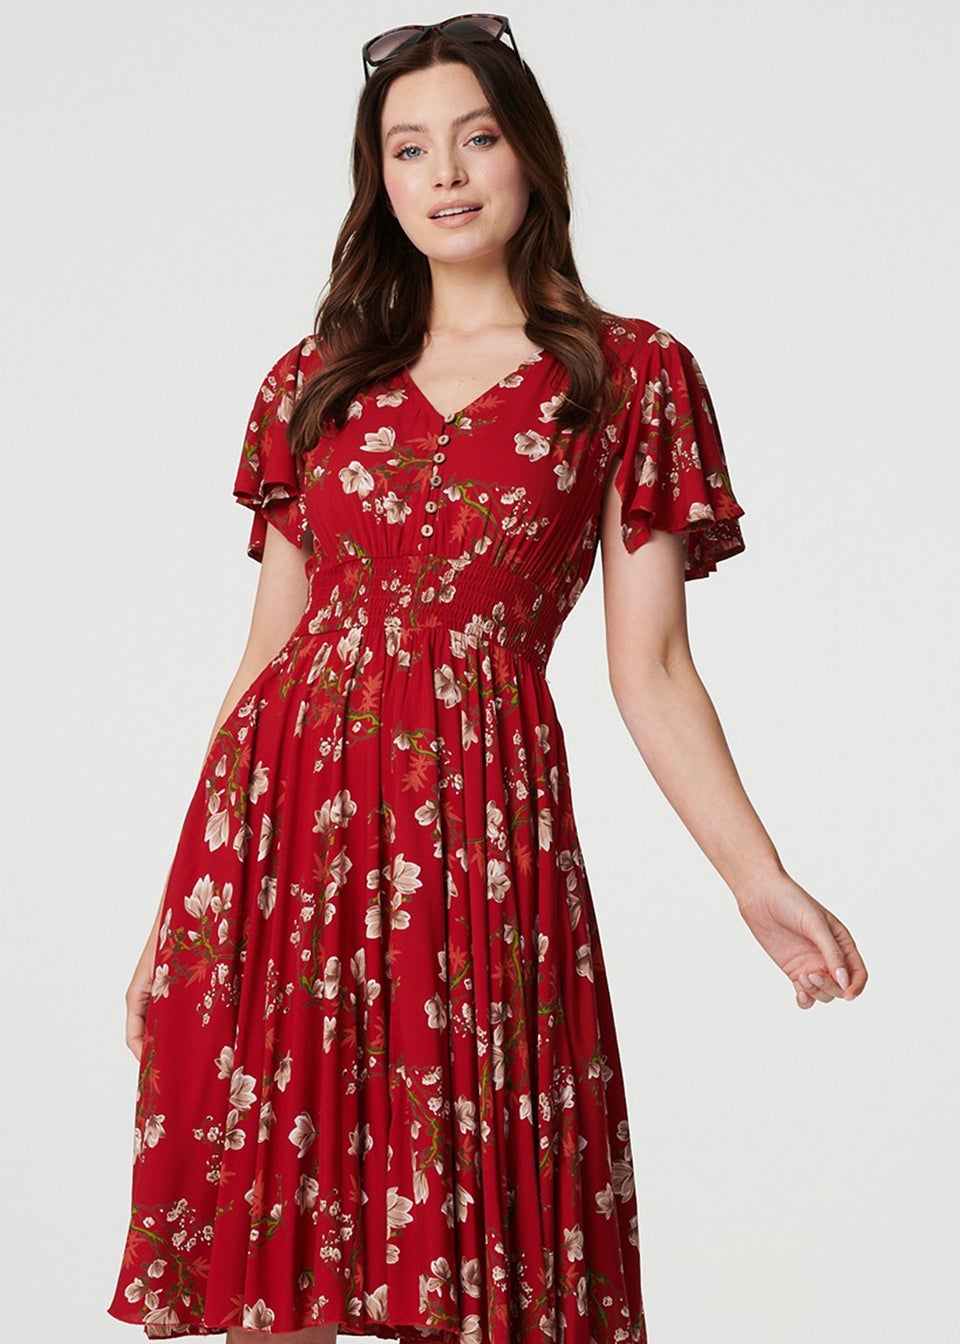 Izabel London Red Floral Angel Sleeve Short Dress